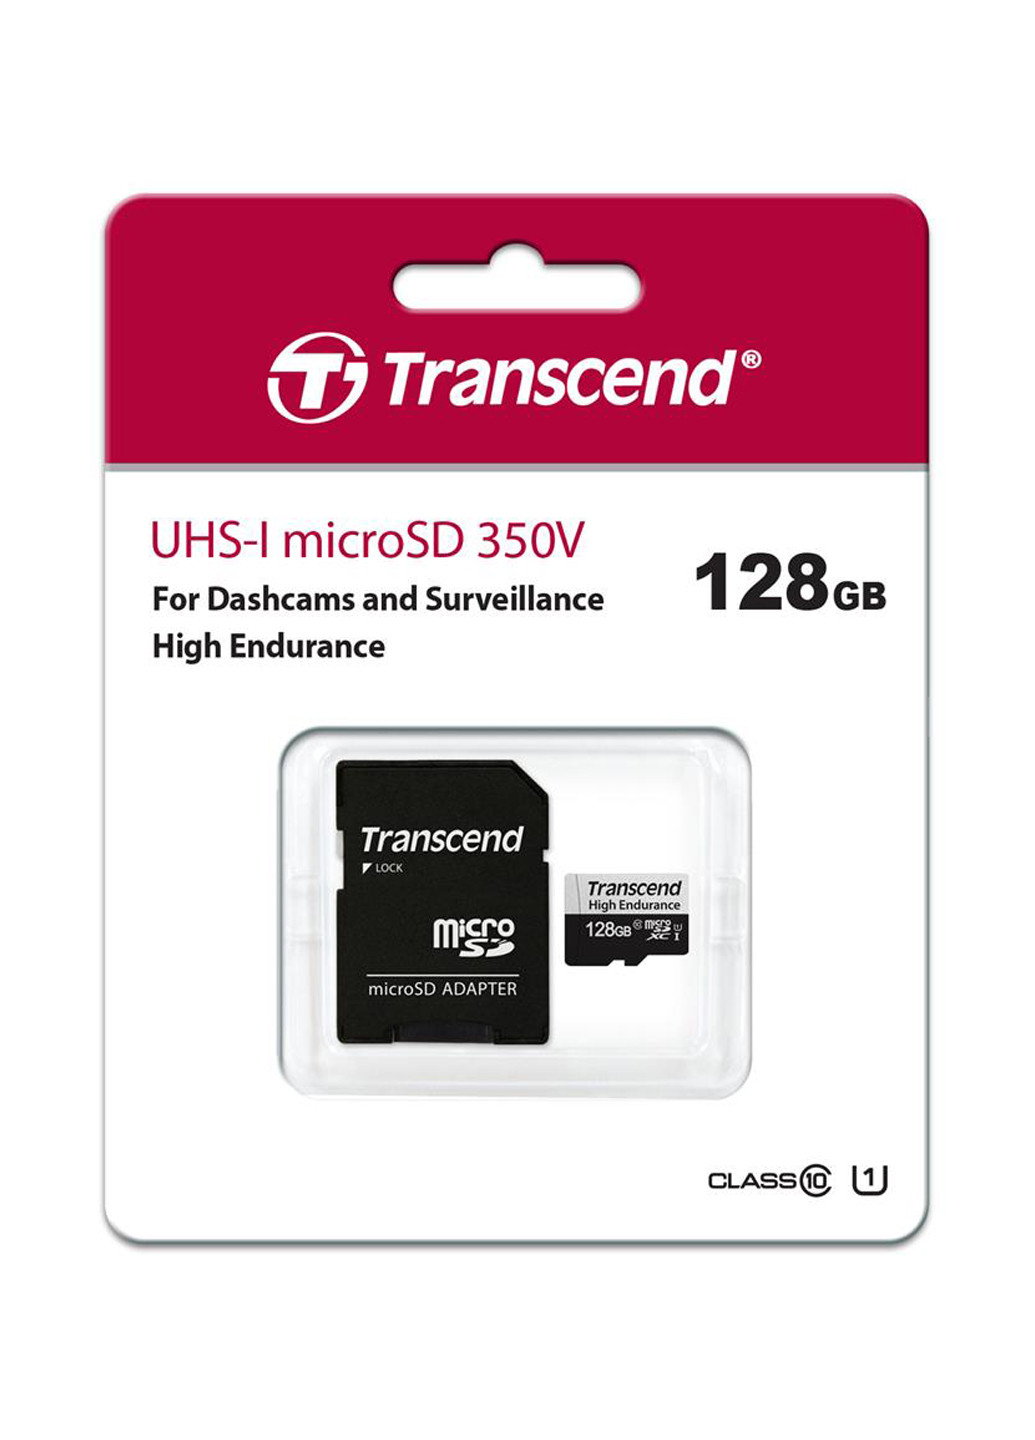 Карта памяти microSDXC 128GB C10 UHS-I U1 High Endurance (170TB) (TS128GUSD350V) Transcend карта памяти transcend microsdxc 128gb c10 uhs-i u1 high endurance (170tb) (ts128gusd350v) (130843167)